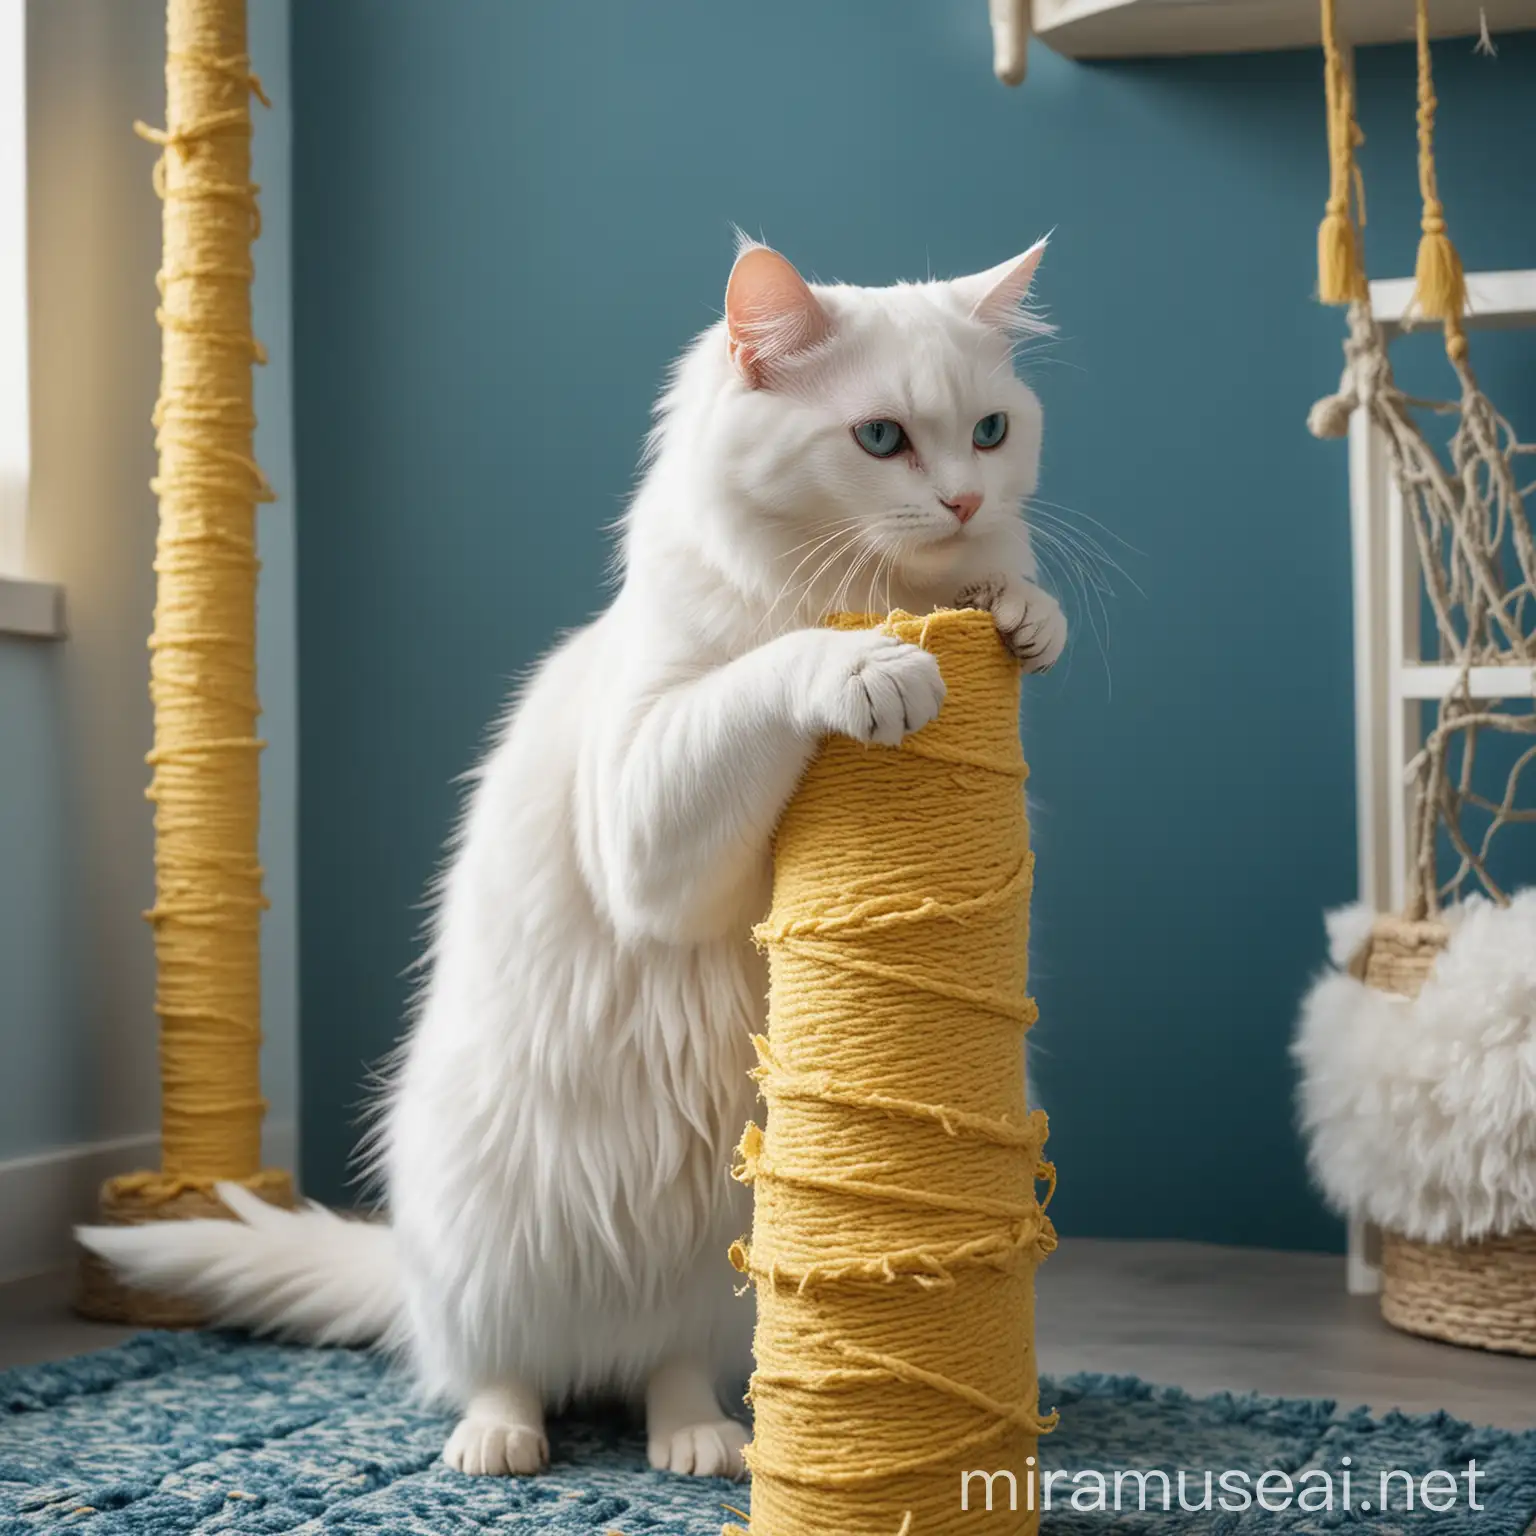 Белый пушистый кот точит когти о желтую когтеточку в комнате в синих тонах